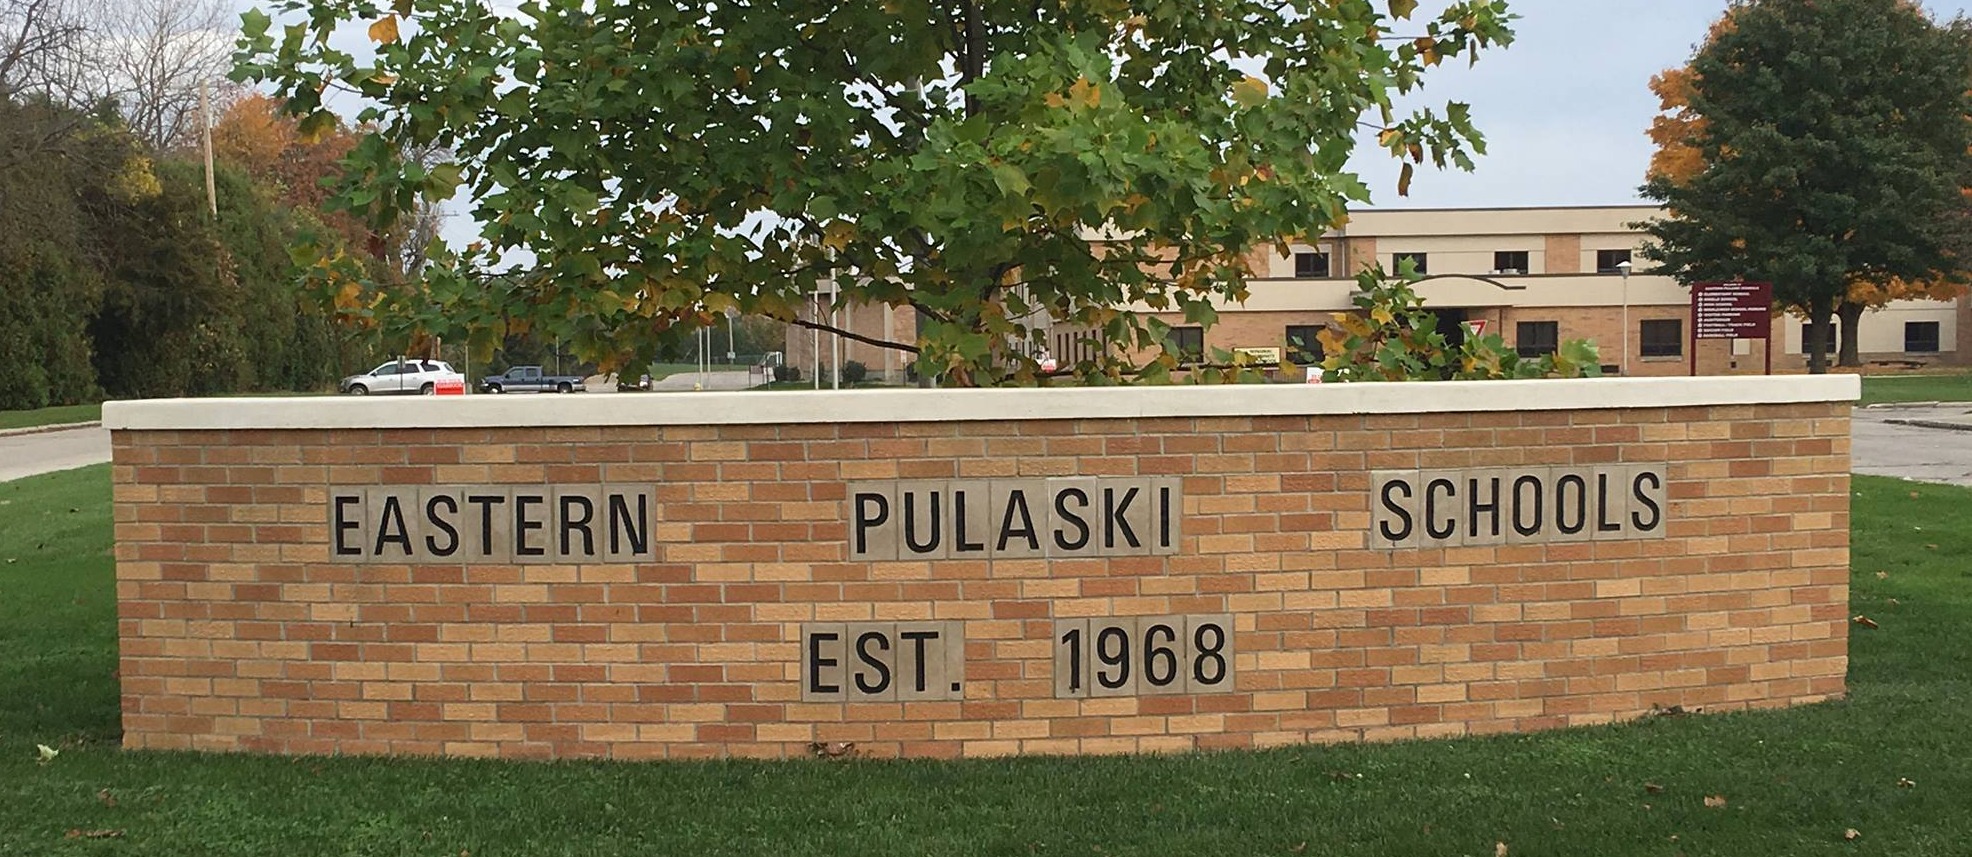 Eastern Pulaski Schools Est. 1968